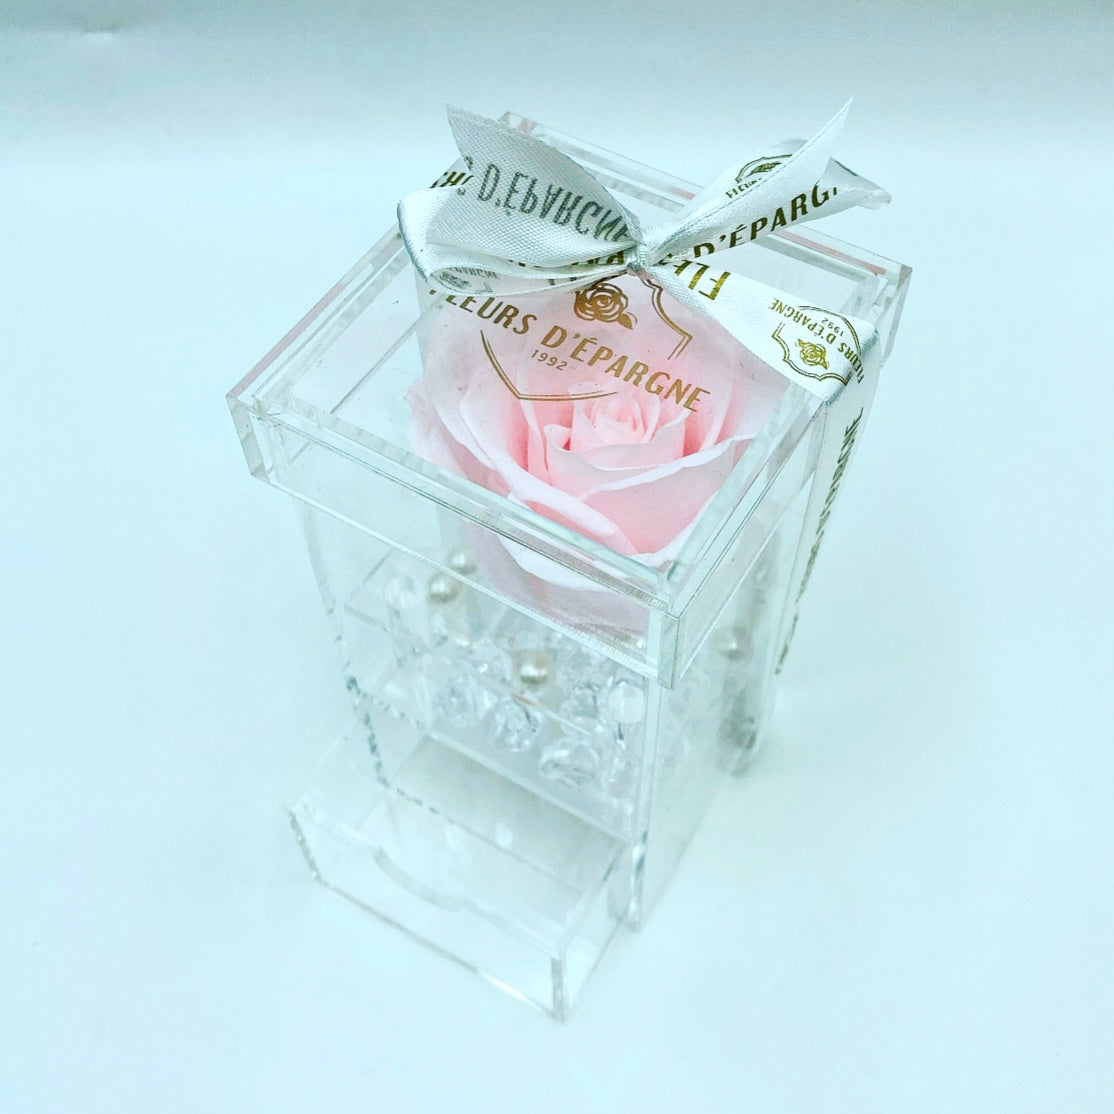 Luxe Crystal Rose Vanity